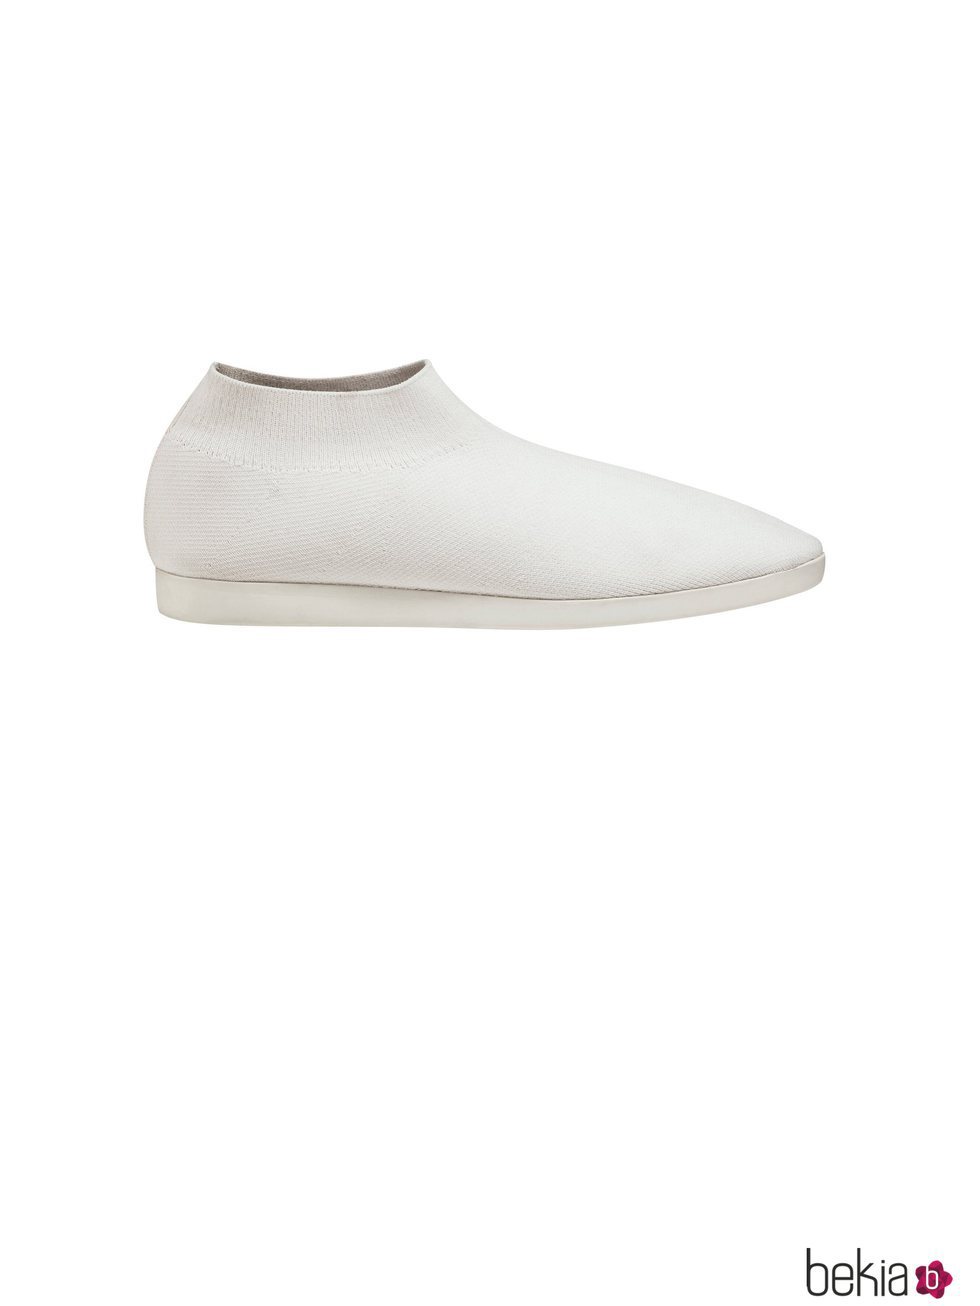 Zapatilla deportiva en color blanca de tela de la Nueva Colección de la firma Cos 2018